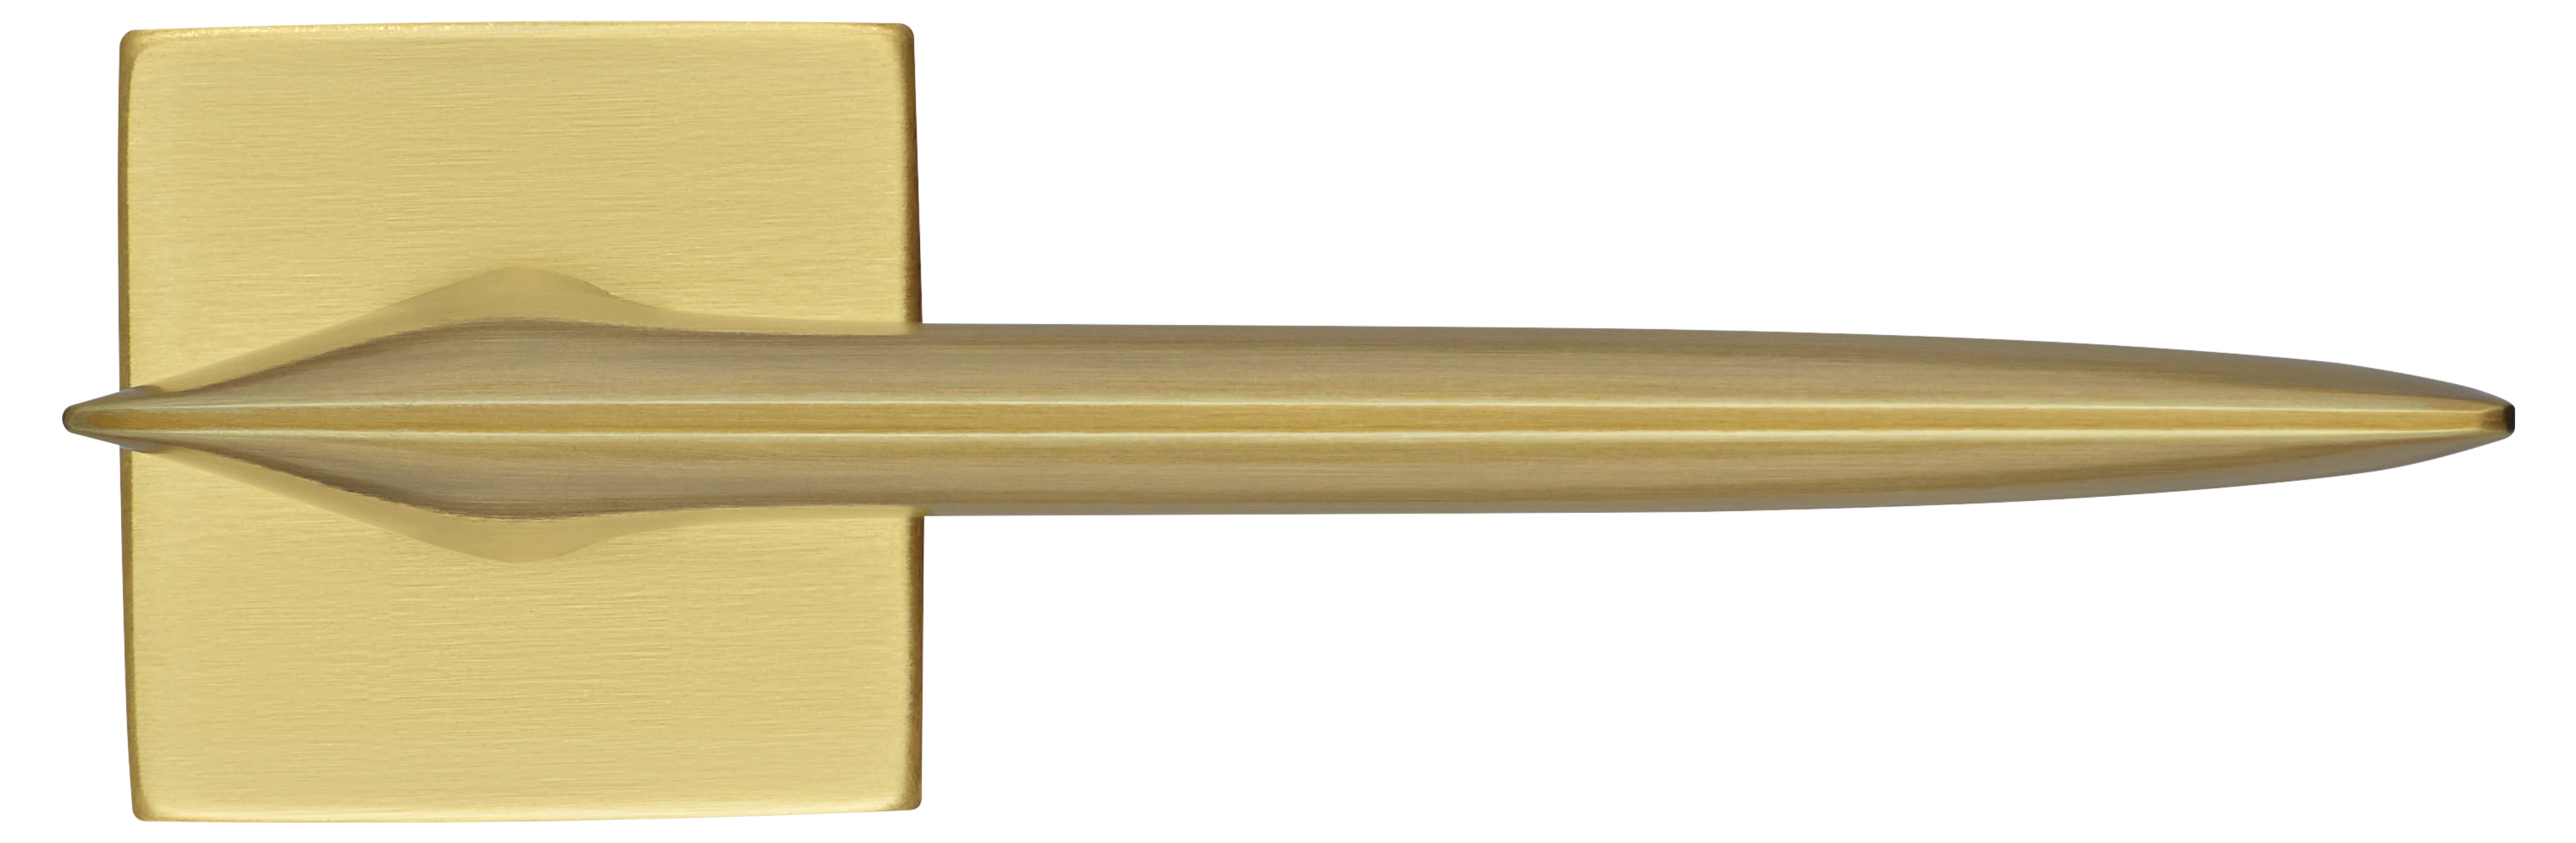 GALACTIC S5 OSA, ручка дверная, цвет -  матовое золото фото купить в Астане